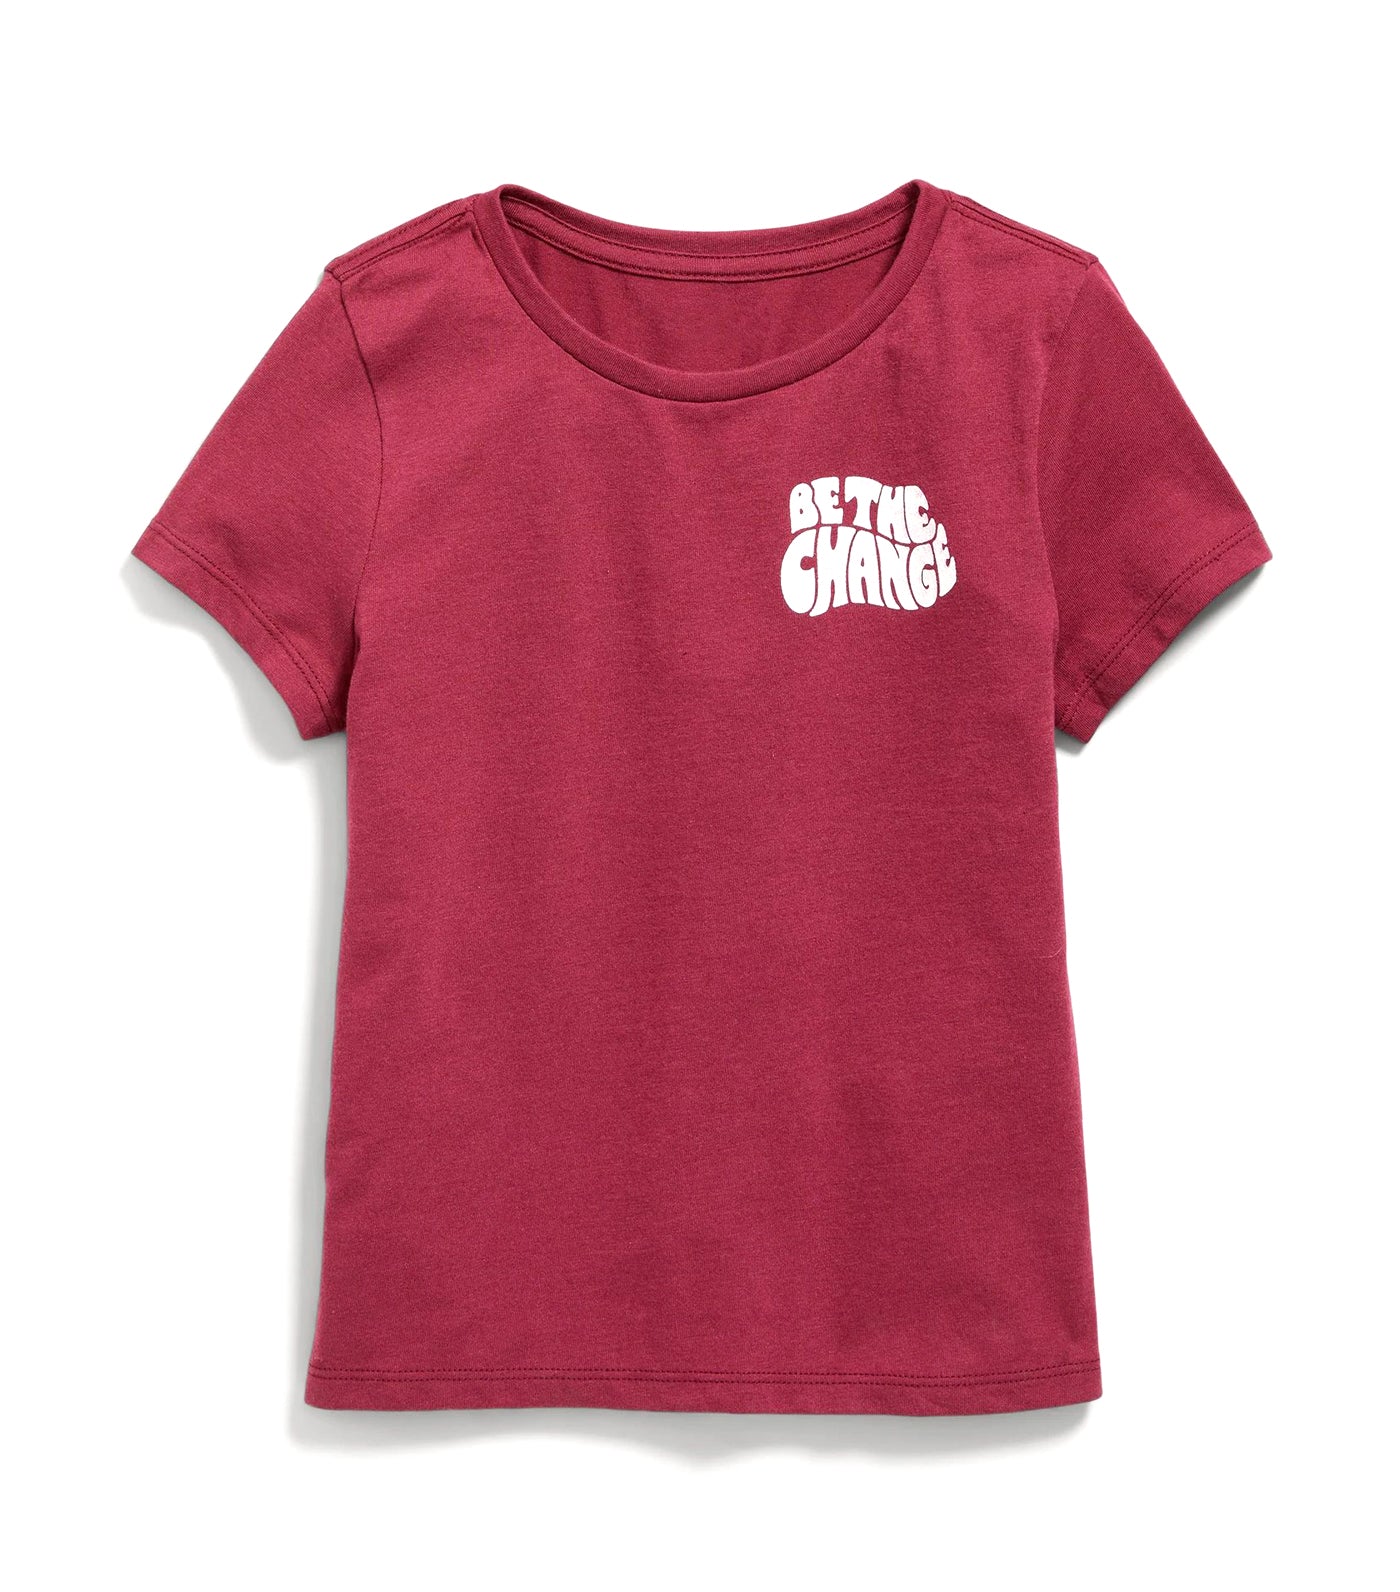 Short-Sleeve Graphic T-Shirt for Girls - Noble Garnet